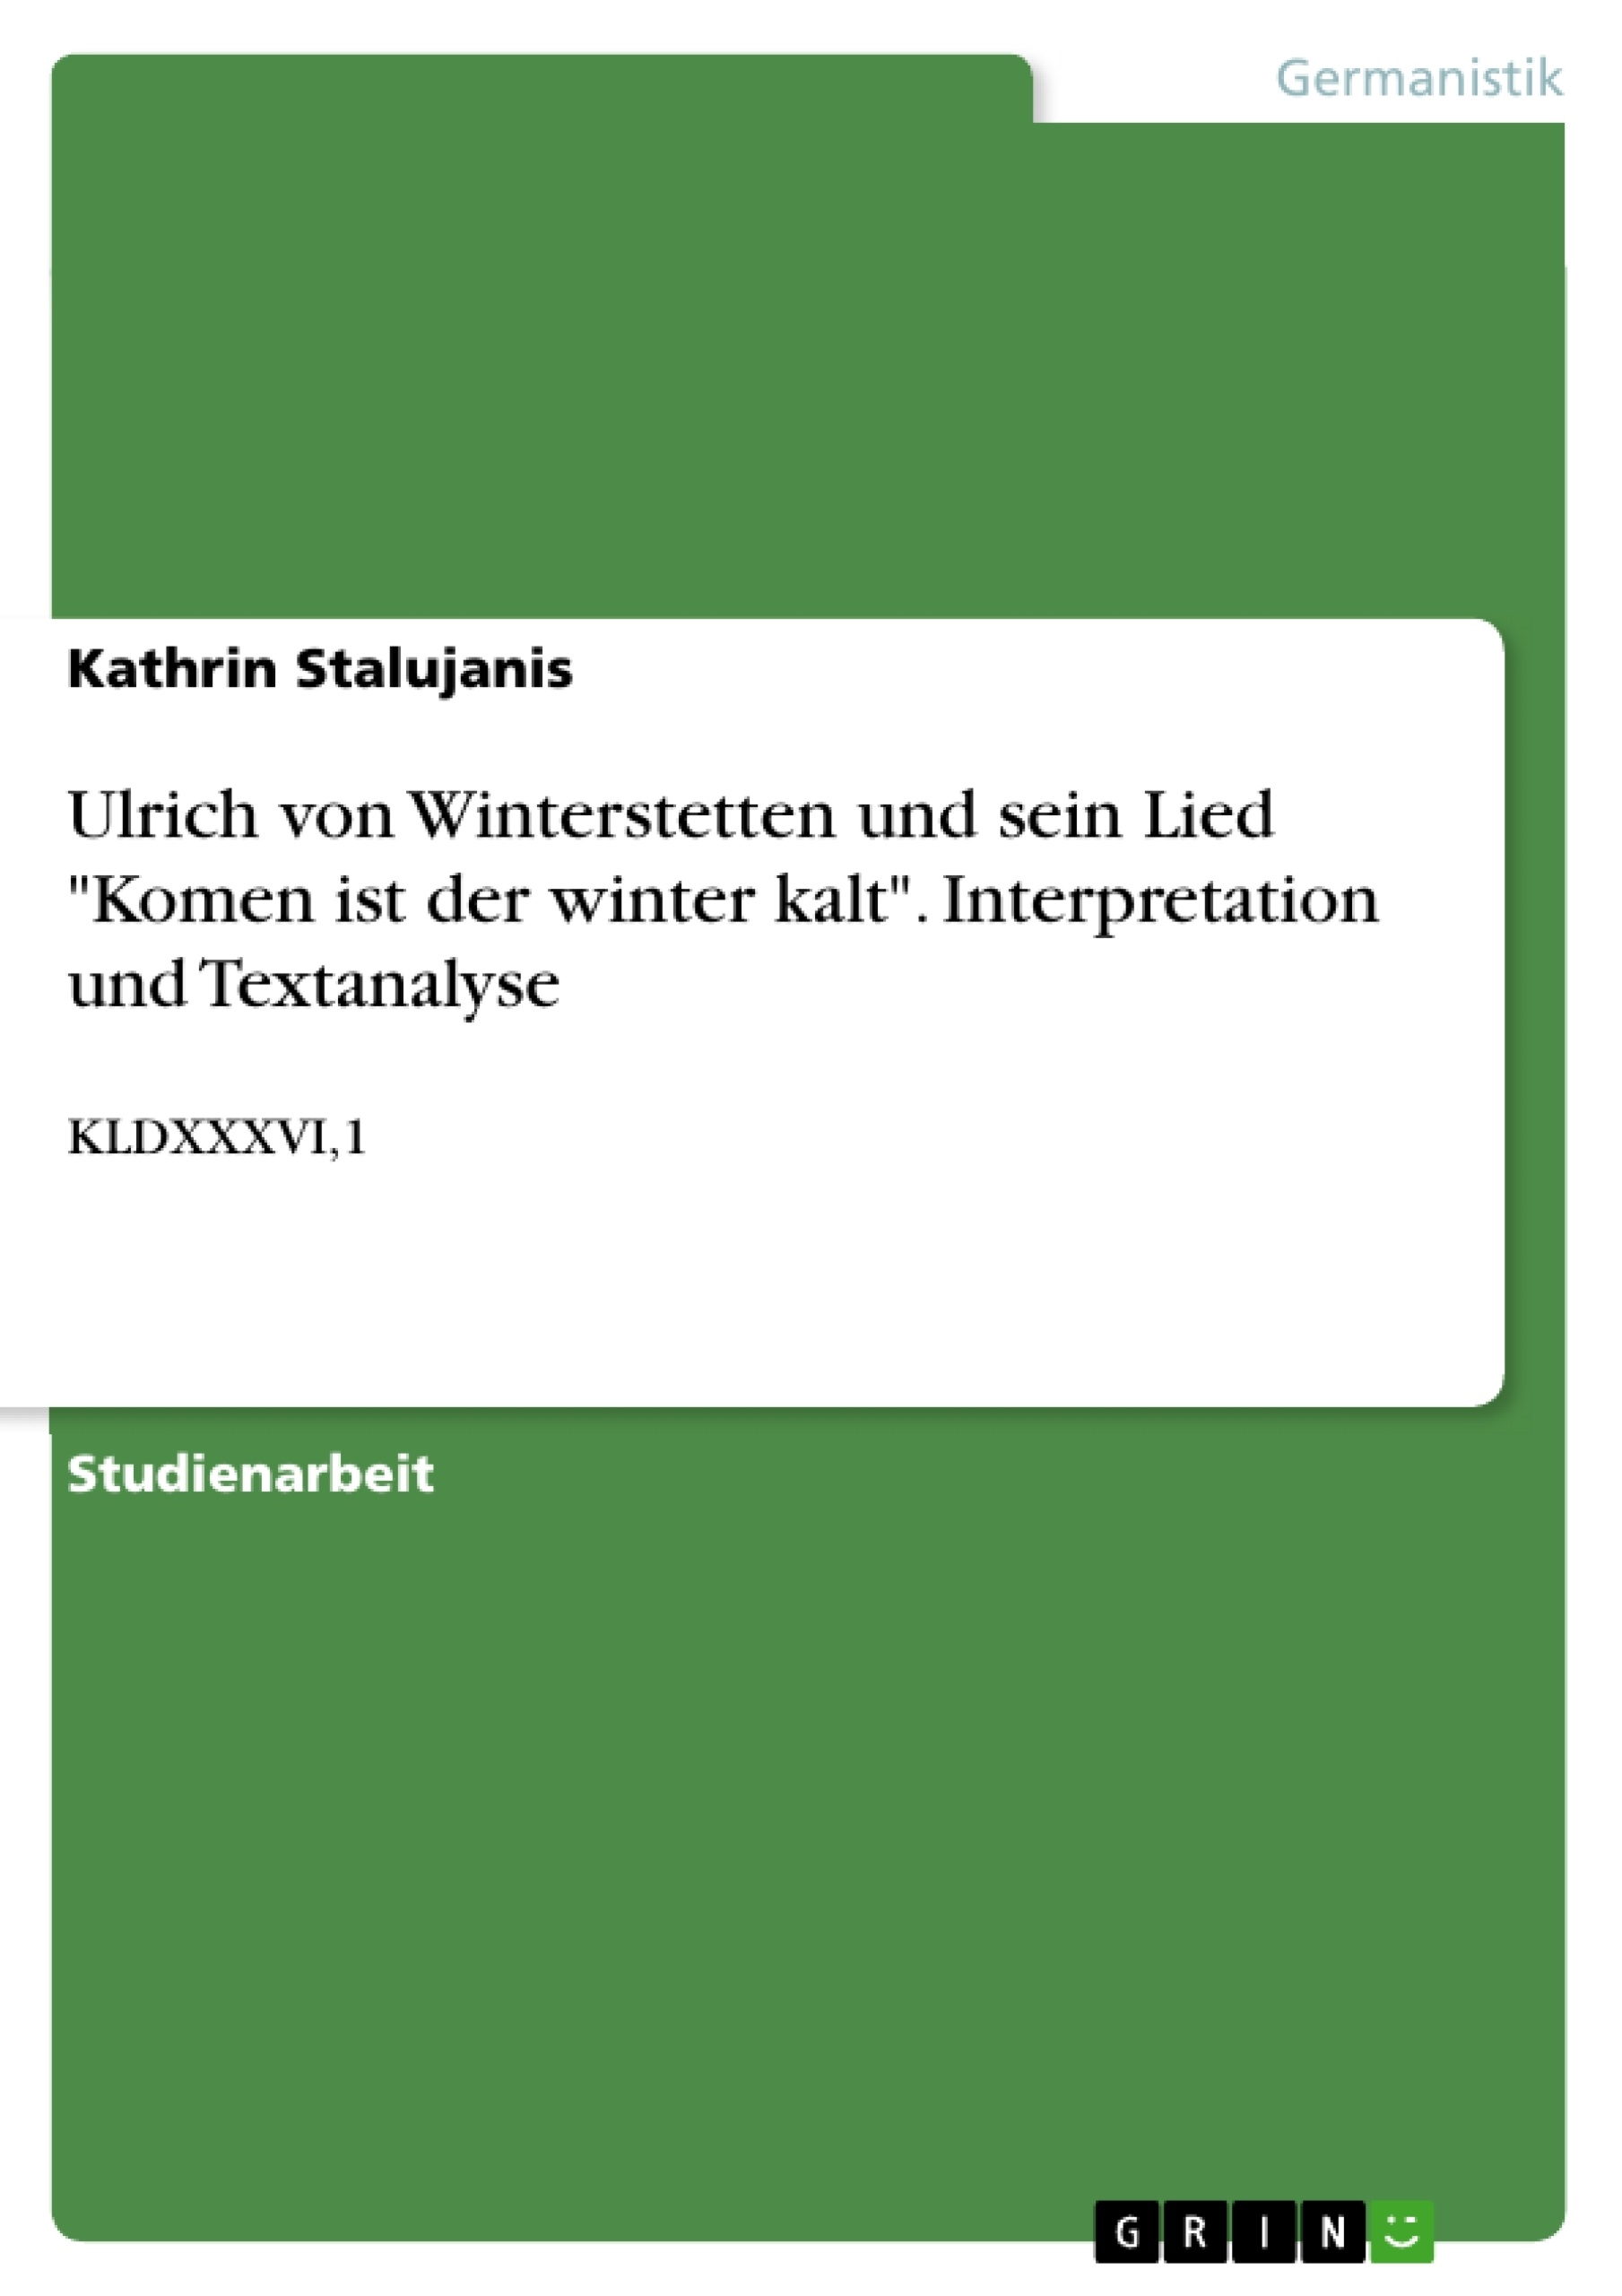 Title: Ulrich von Winterstetten und sein Lied "Komen ist der winter kalt". Interpretation und Textanalyse